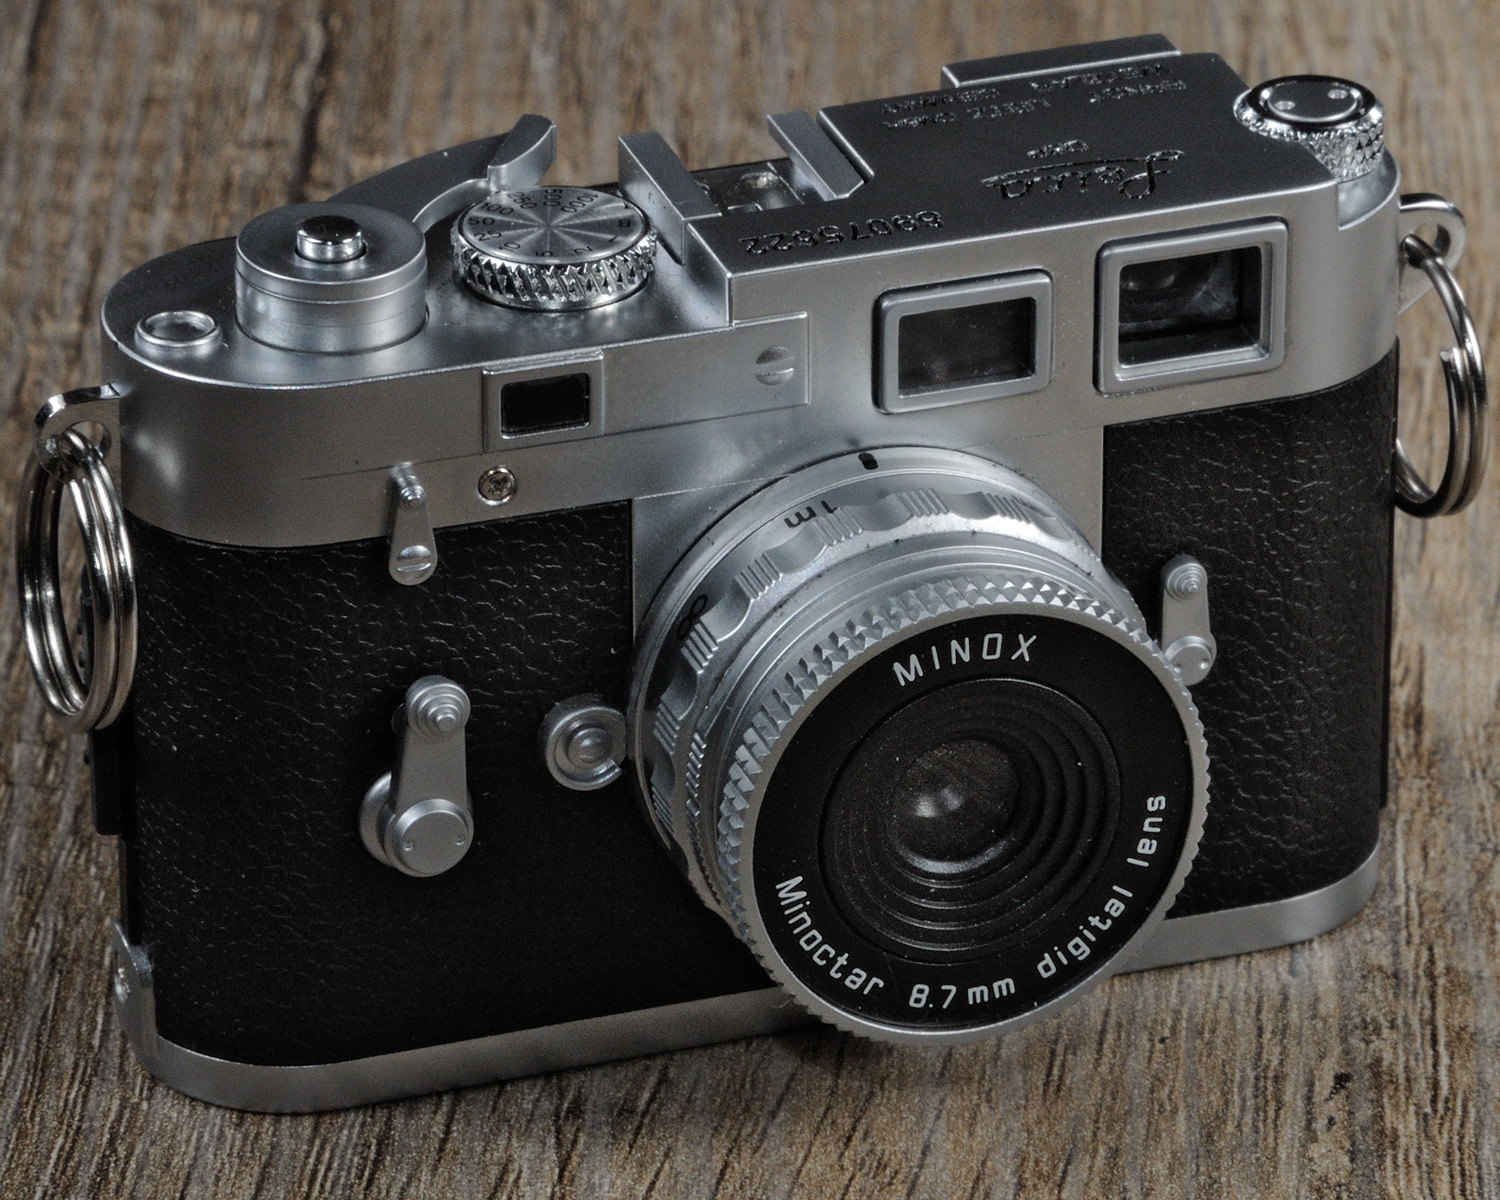 Minox Leica DCC M3 Plus C. Zahn - Digitalkamera-Museum